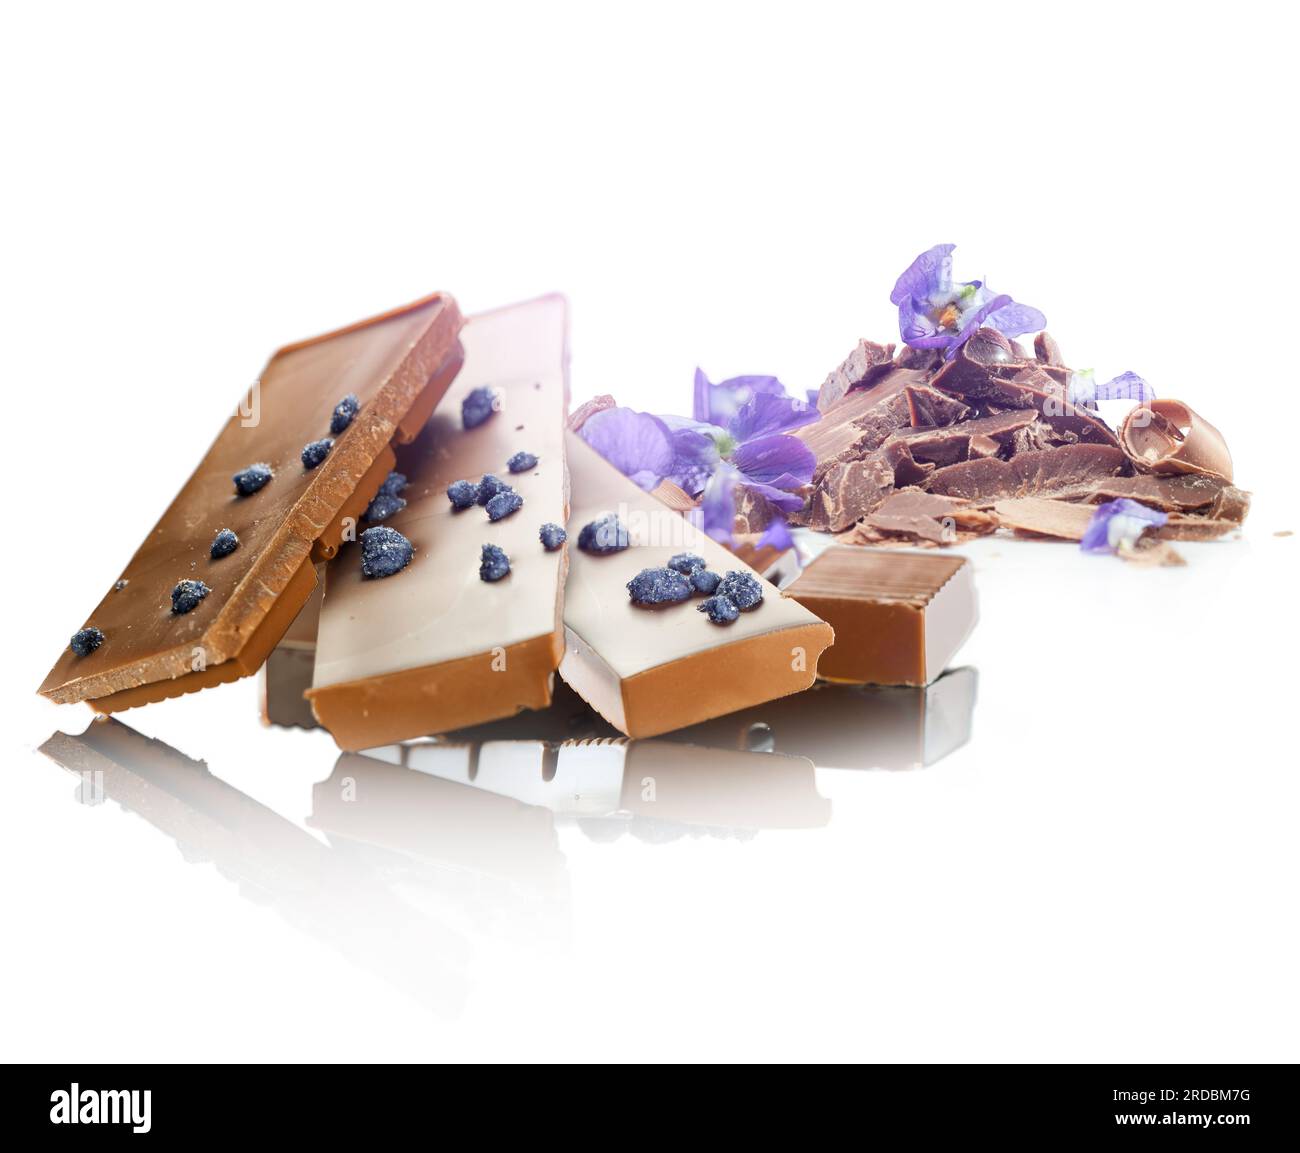 Adagiato su uno sfondo bianco, tre pezzi di cioccolato viola. Cioccolato aromatizzato da prodotti naturali. Foto Stock